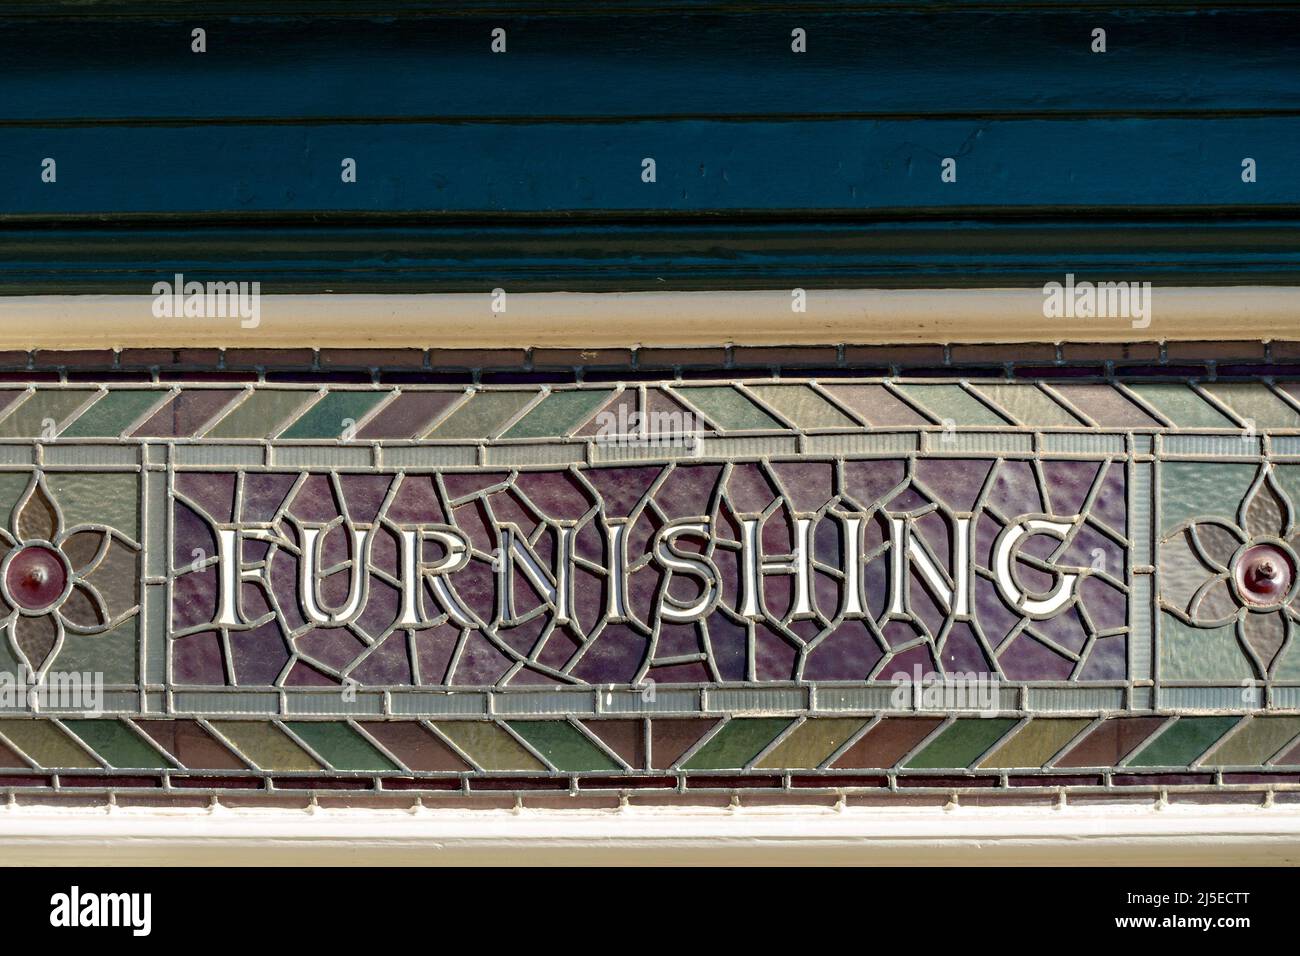 Vieux mobilier en vitraux détail des enseignes, boutique de matériel traditionnel Norton and son, Uppingham, Rutland, Angleterre, Royaume-Uni Banque D'Images